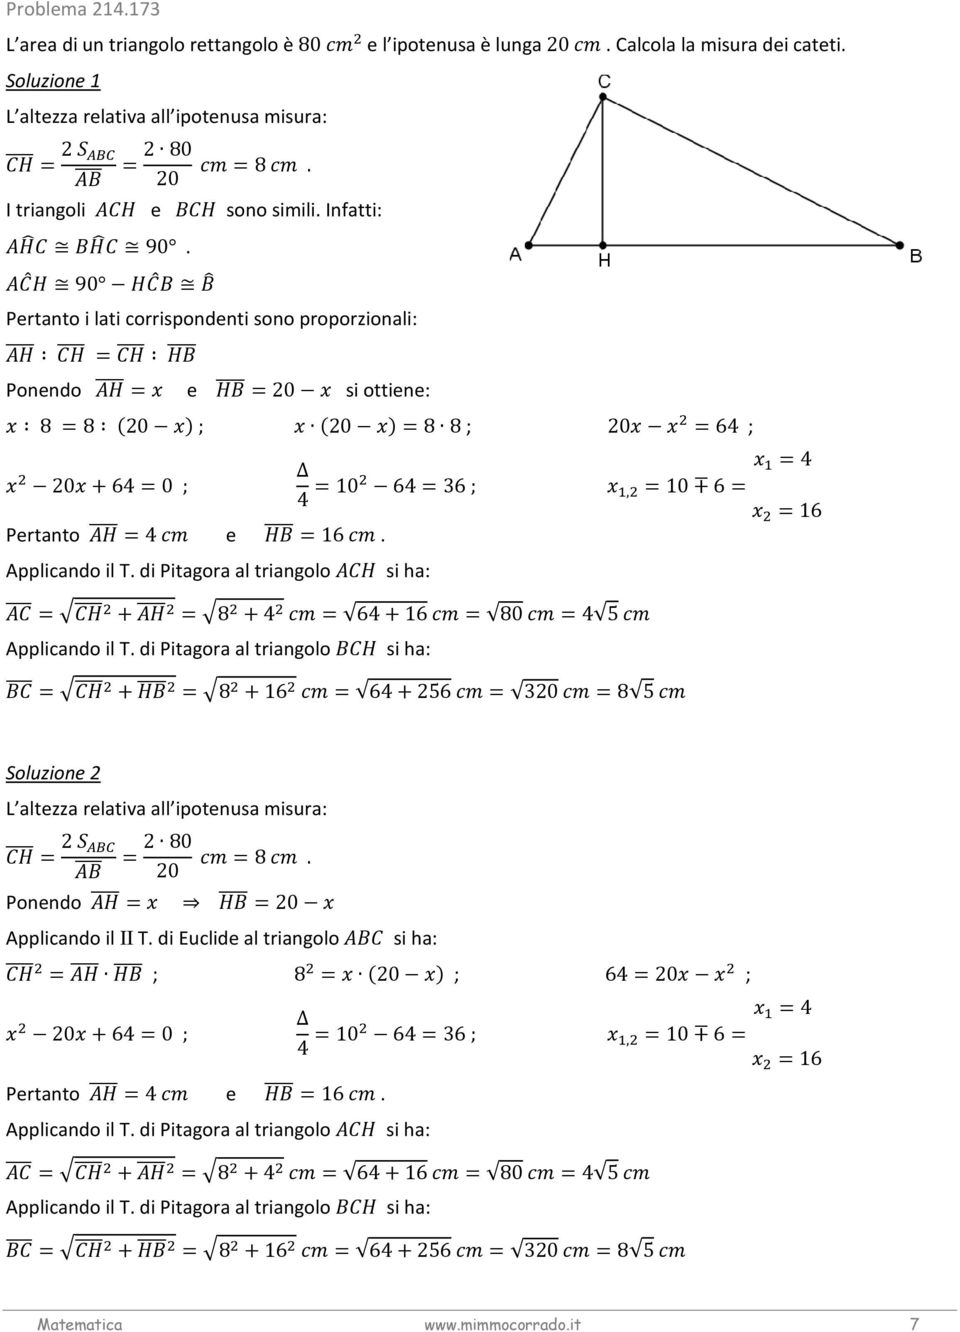 di Pitagora al triangolo si ha: =4 4 =10 64=36 ;, =10 6= =16 e =16. = + =8 +4 = 64+16 = 80 =4 5 Applicando il T.